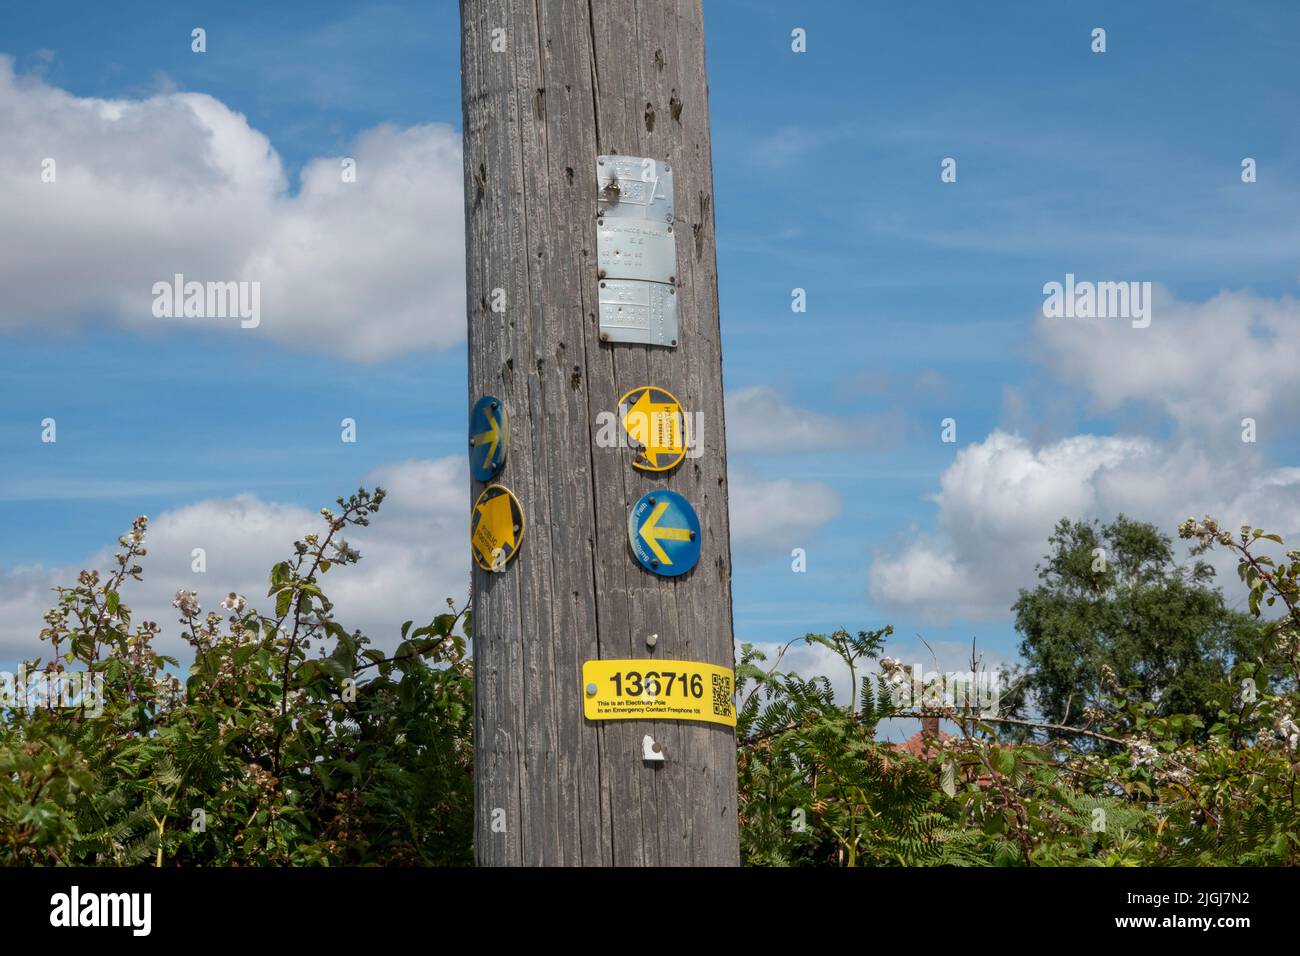 Punteros circulares direccionales en un poste de electricidad de madera que indican varios derechos de paso en la ruta costera de Suffolk Foto de stock